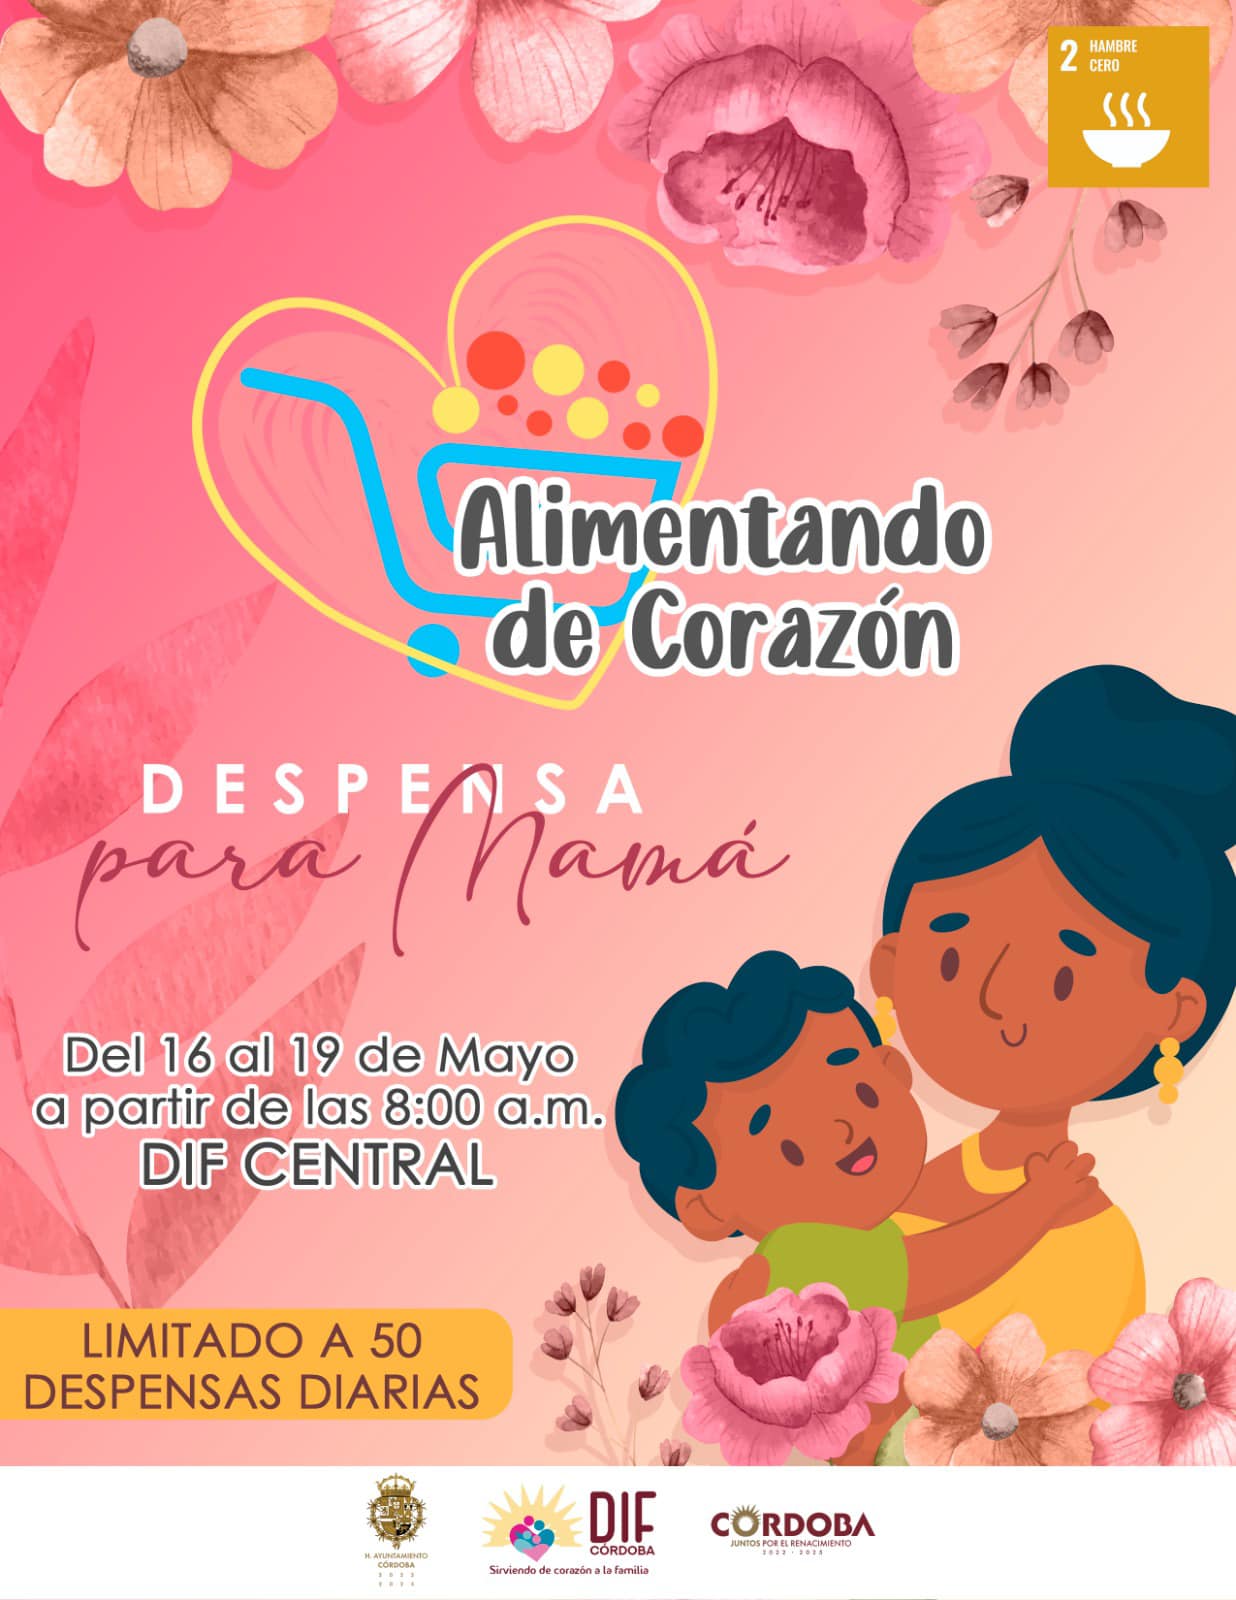 DIF Córdoba convoca a la entrega de despensas para “Alimentando de corazón” con motivo de la celebración del pasado Día de la Madre.